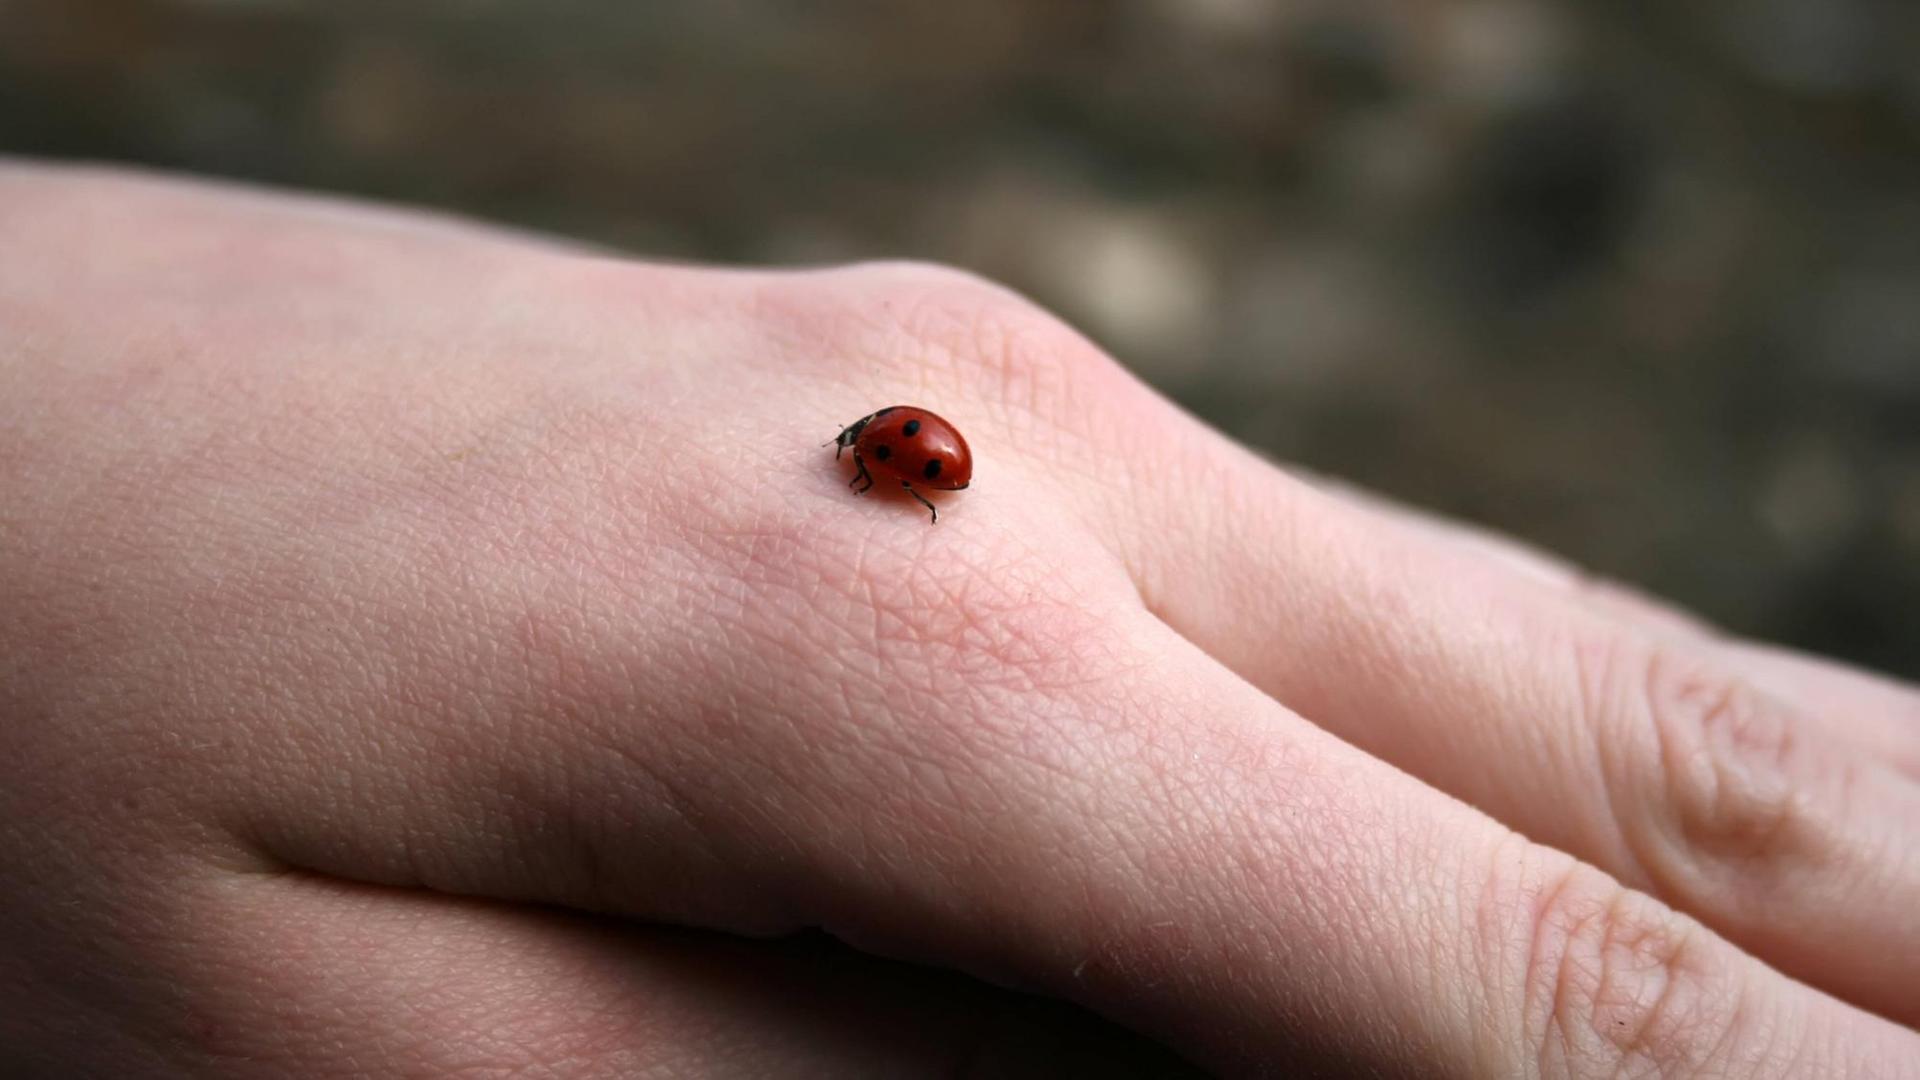 Ein Marienkäfer krabbelt auf einer Hand.